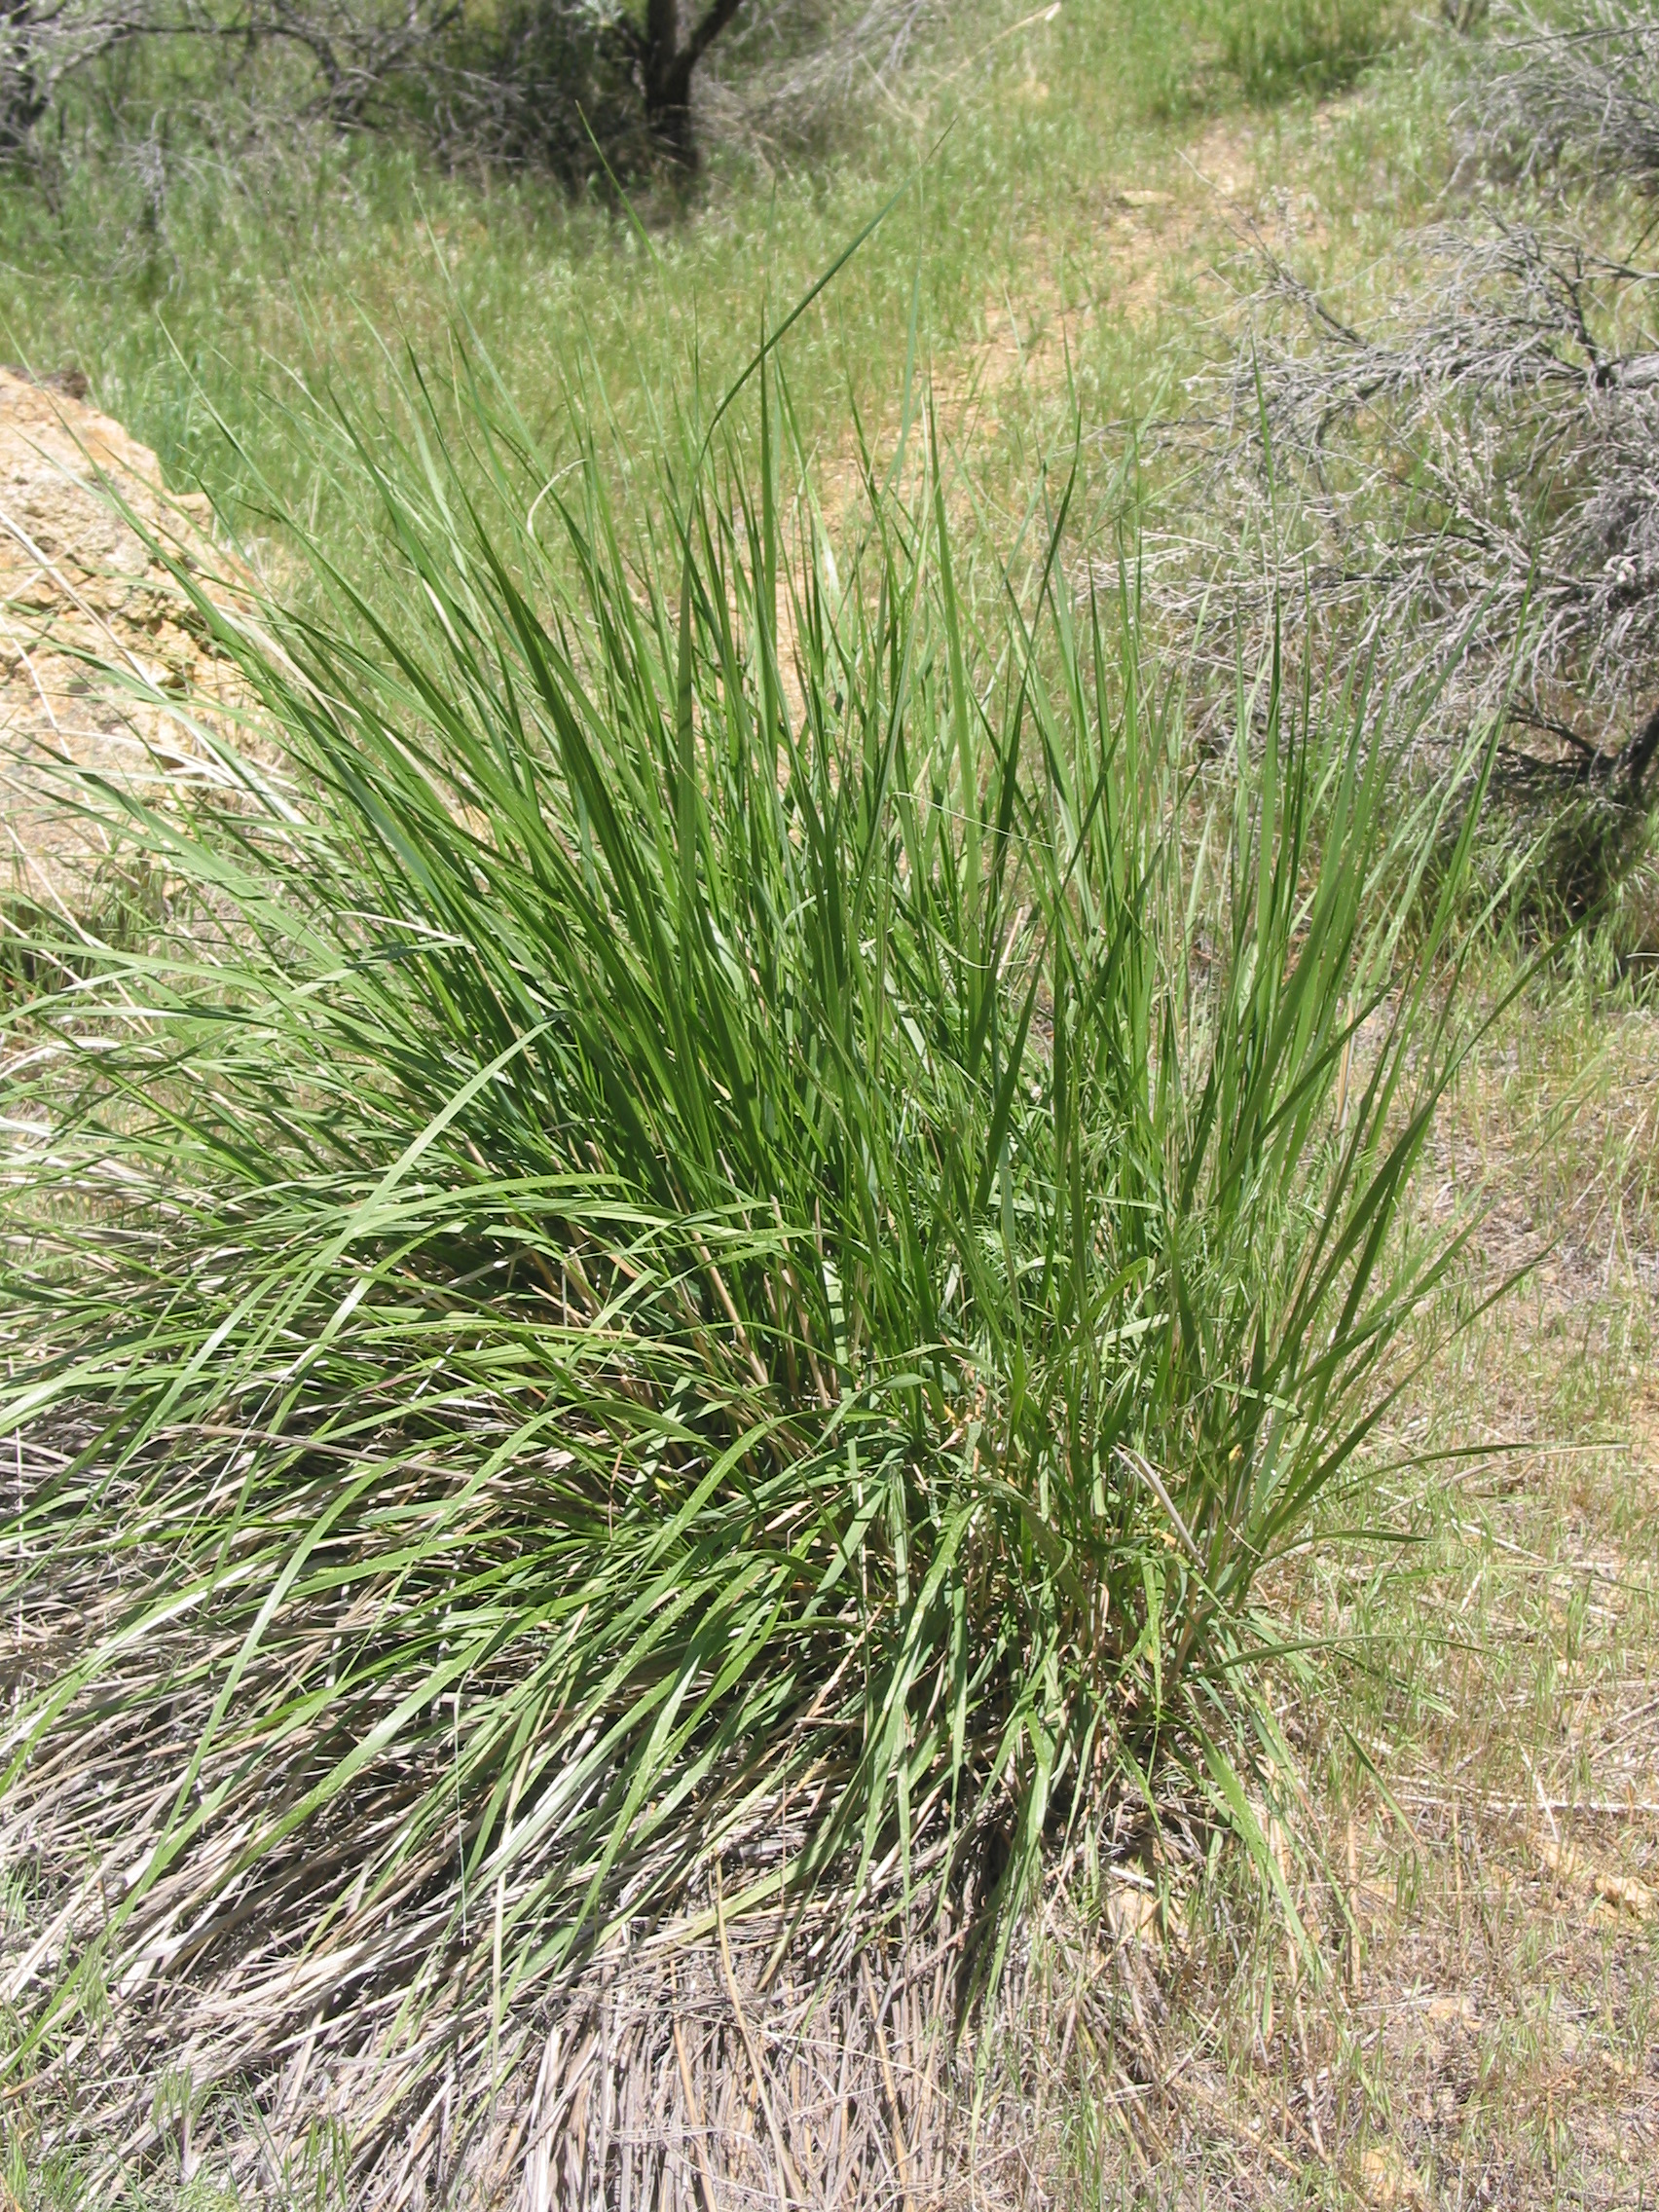 Great Basin Wild Rye (Elymus cinereus)
